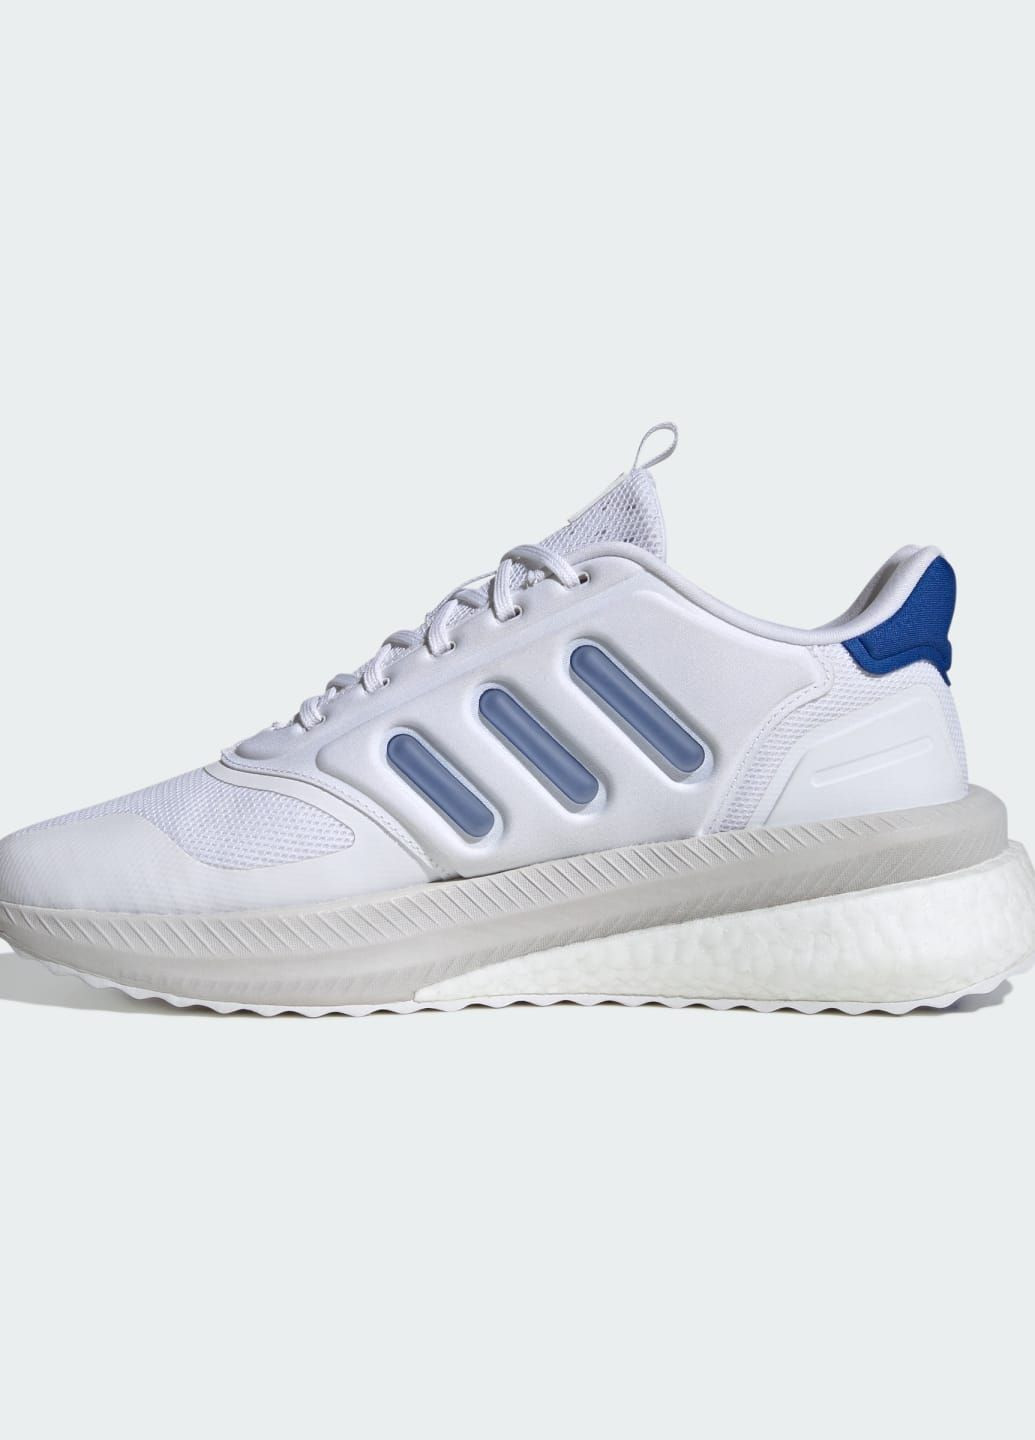 Белые всесезонные кроссовки x_plrphase adidas